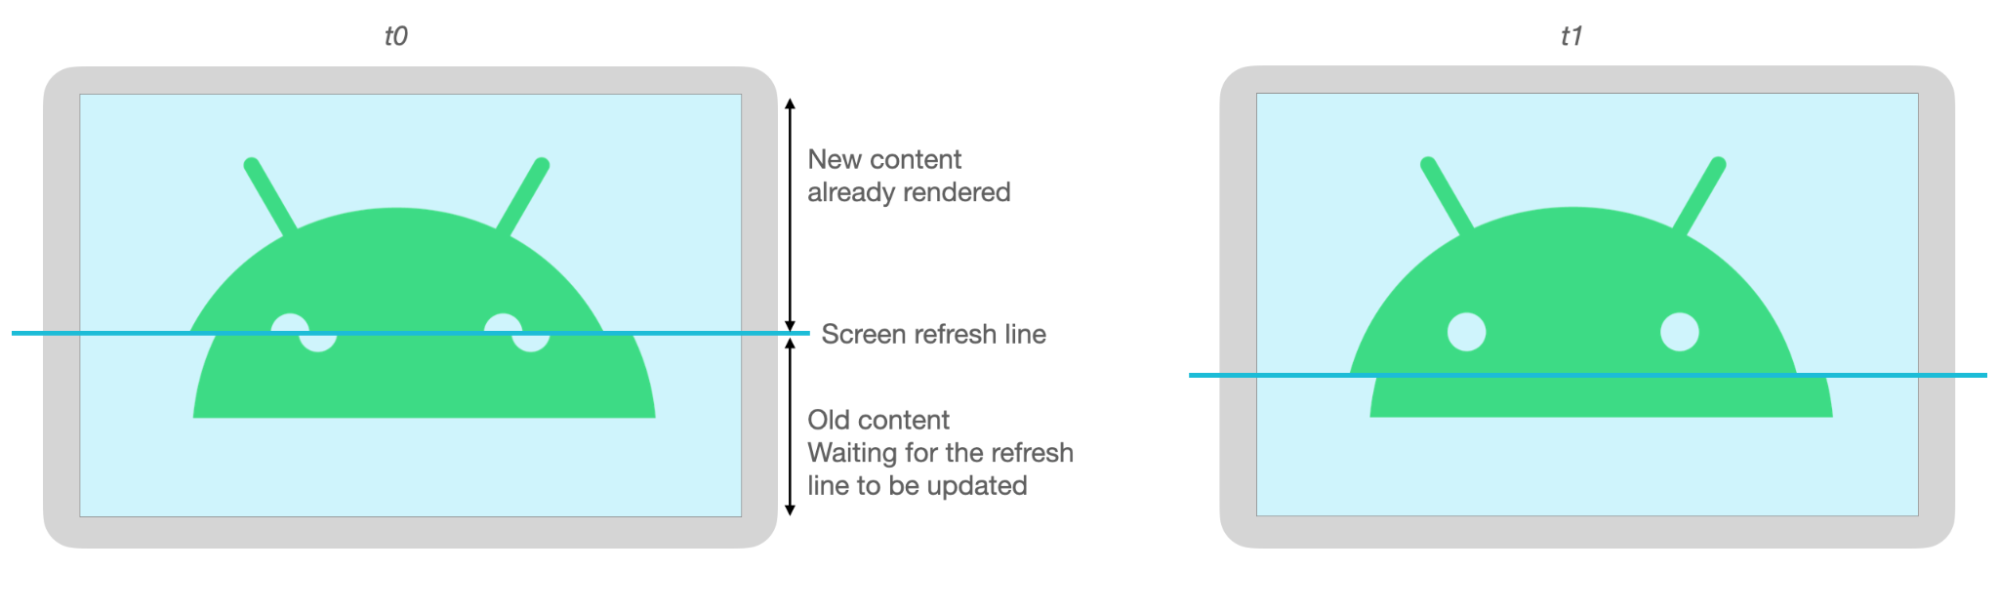 Ekran yenilenirken yırtıldığı için Android görselinin üst ve alt kısımları uyumsuz.